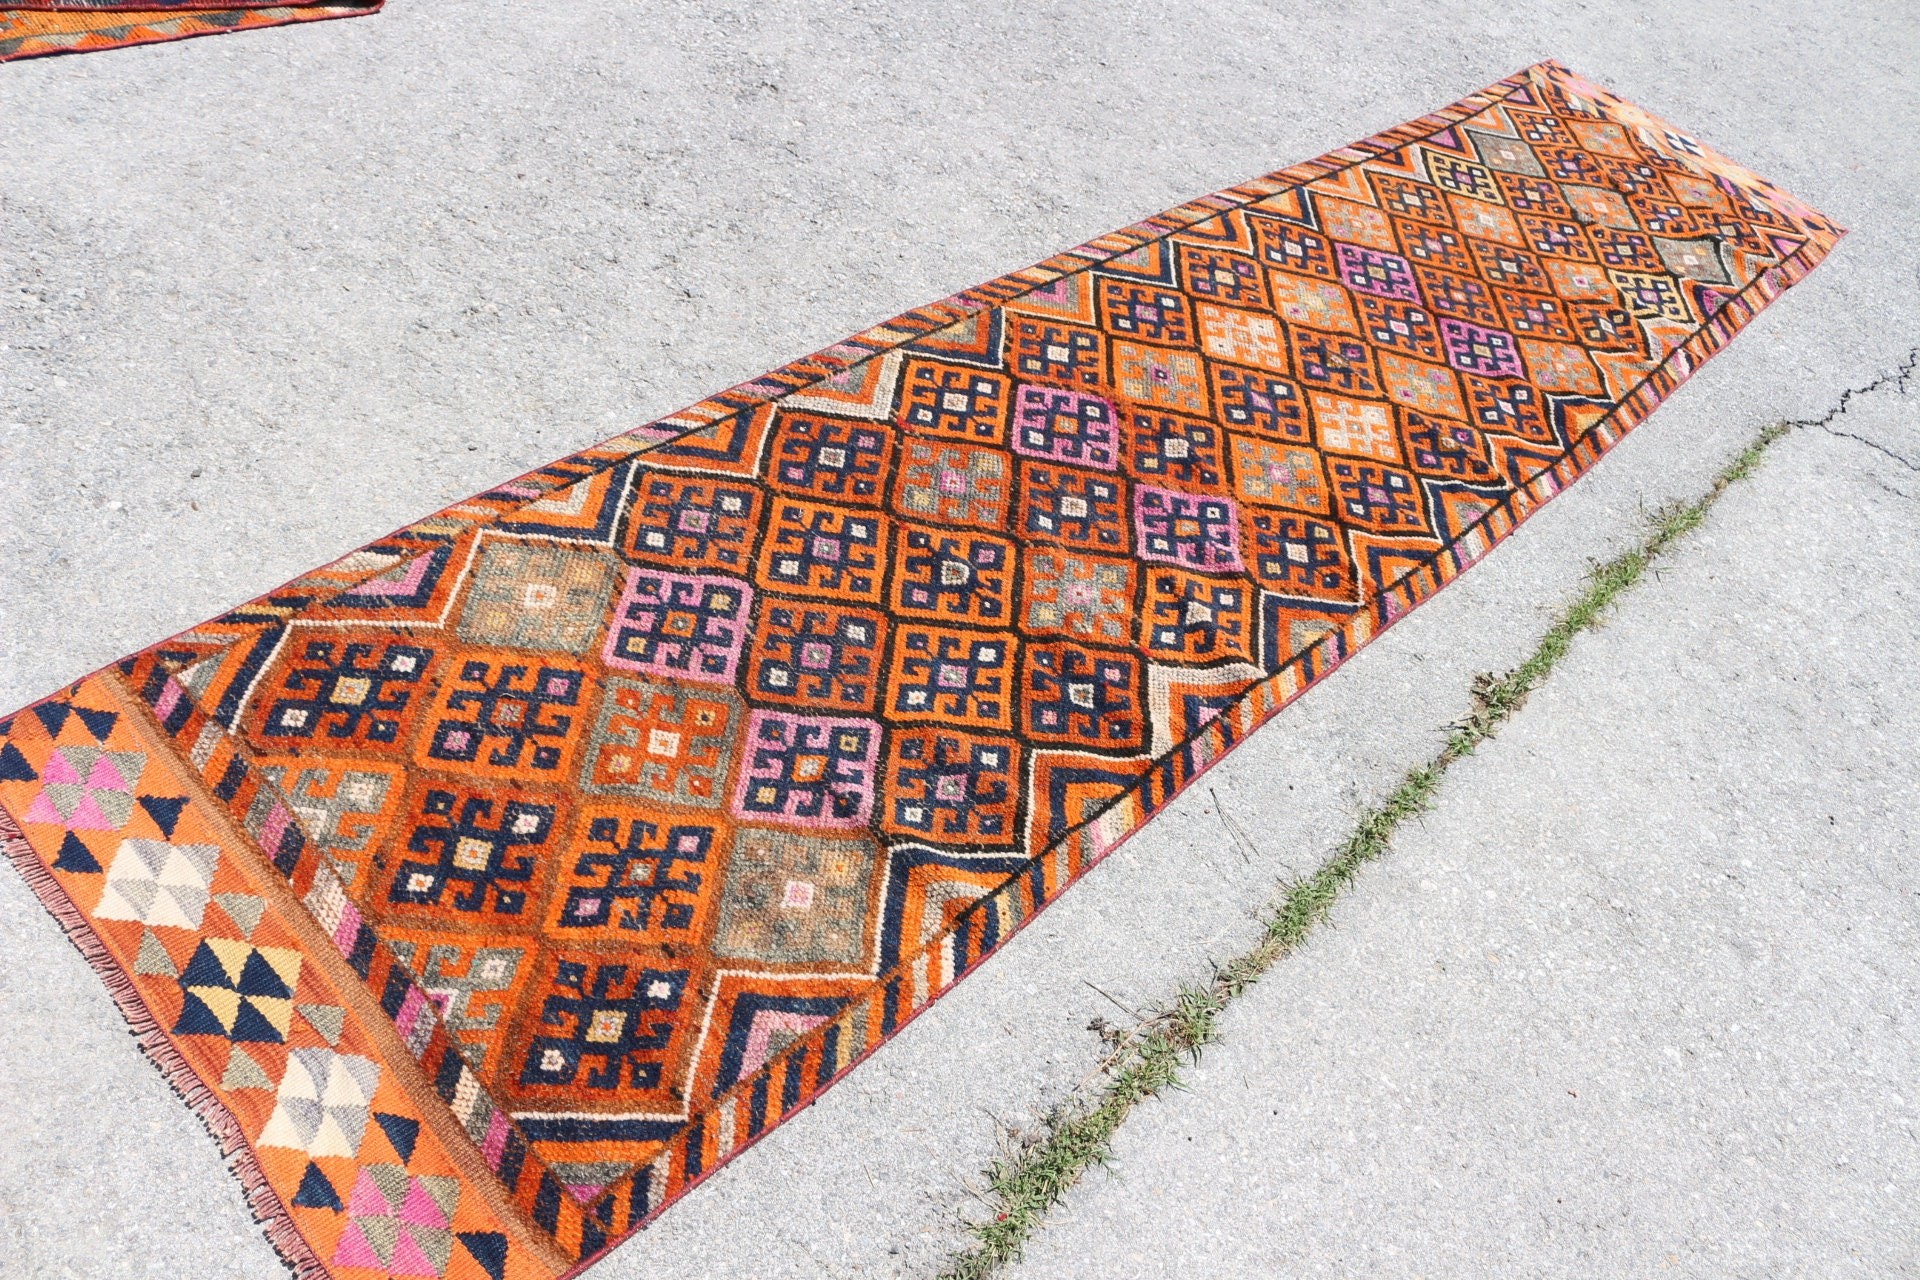 Orange Antique Rugs, Rugs for Runner, Anatolian Rugs, Floor Rugs, Corridor Rugs, Old Rug, Vintage Rug, Turkish Rug, 2.7x12.4 ft Runner Rugs